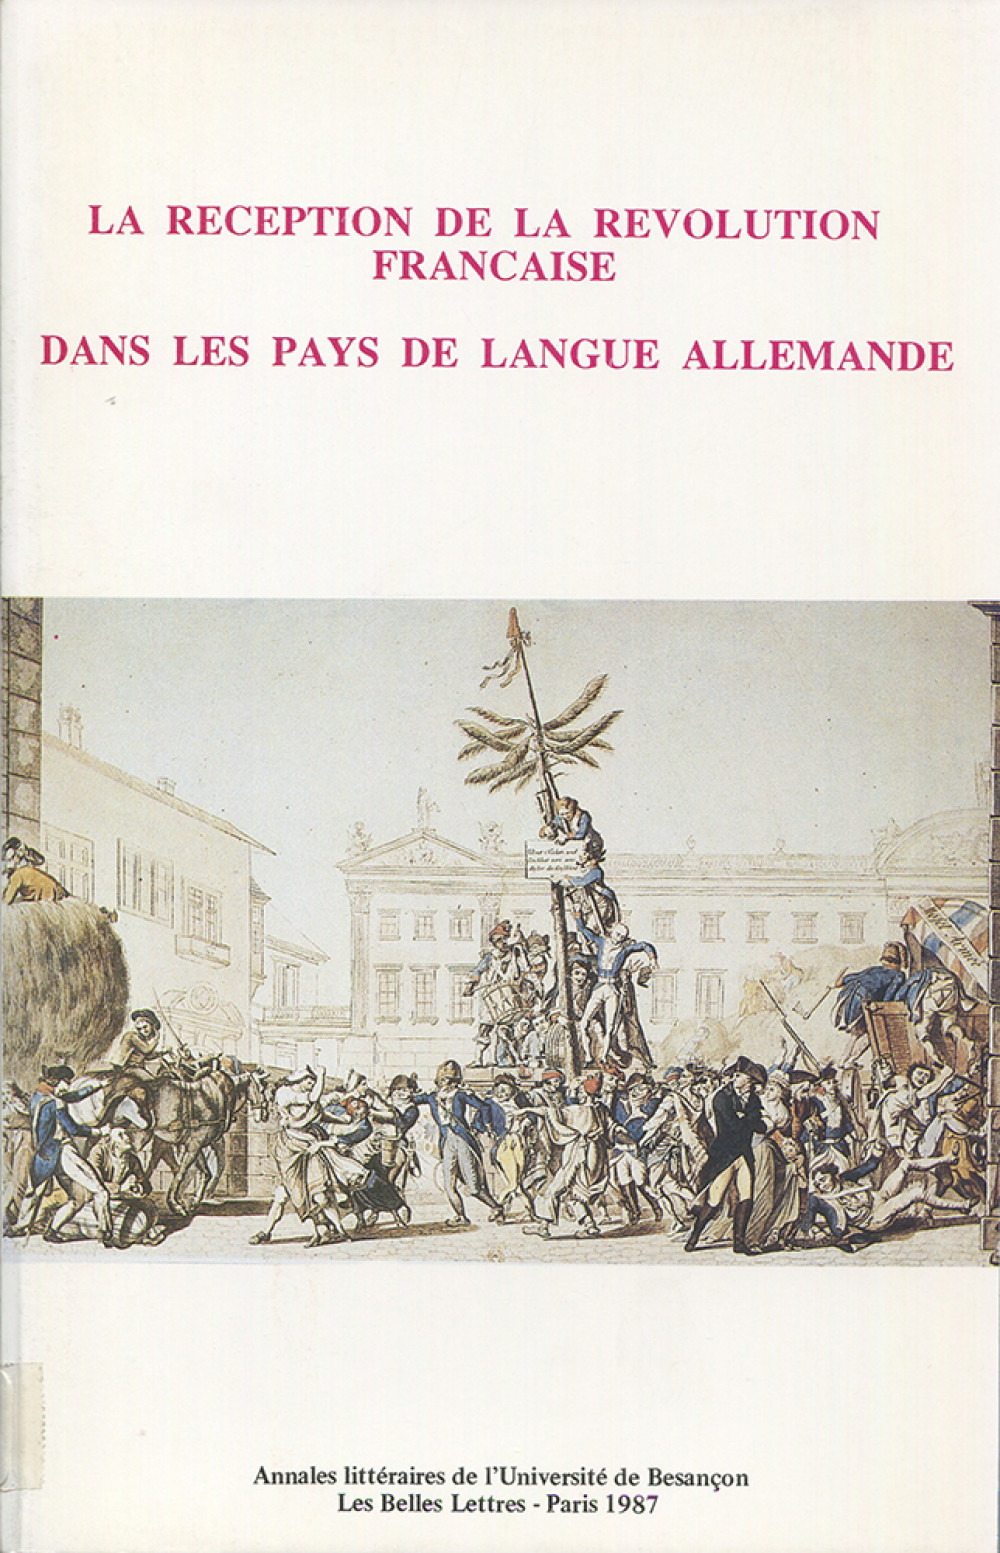 La réception de la Révolution française dans les pays de langue allemande